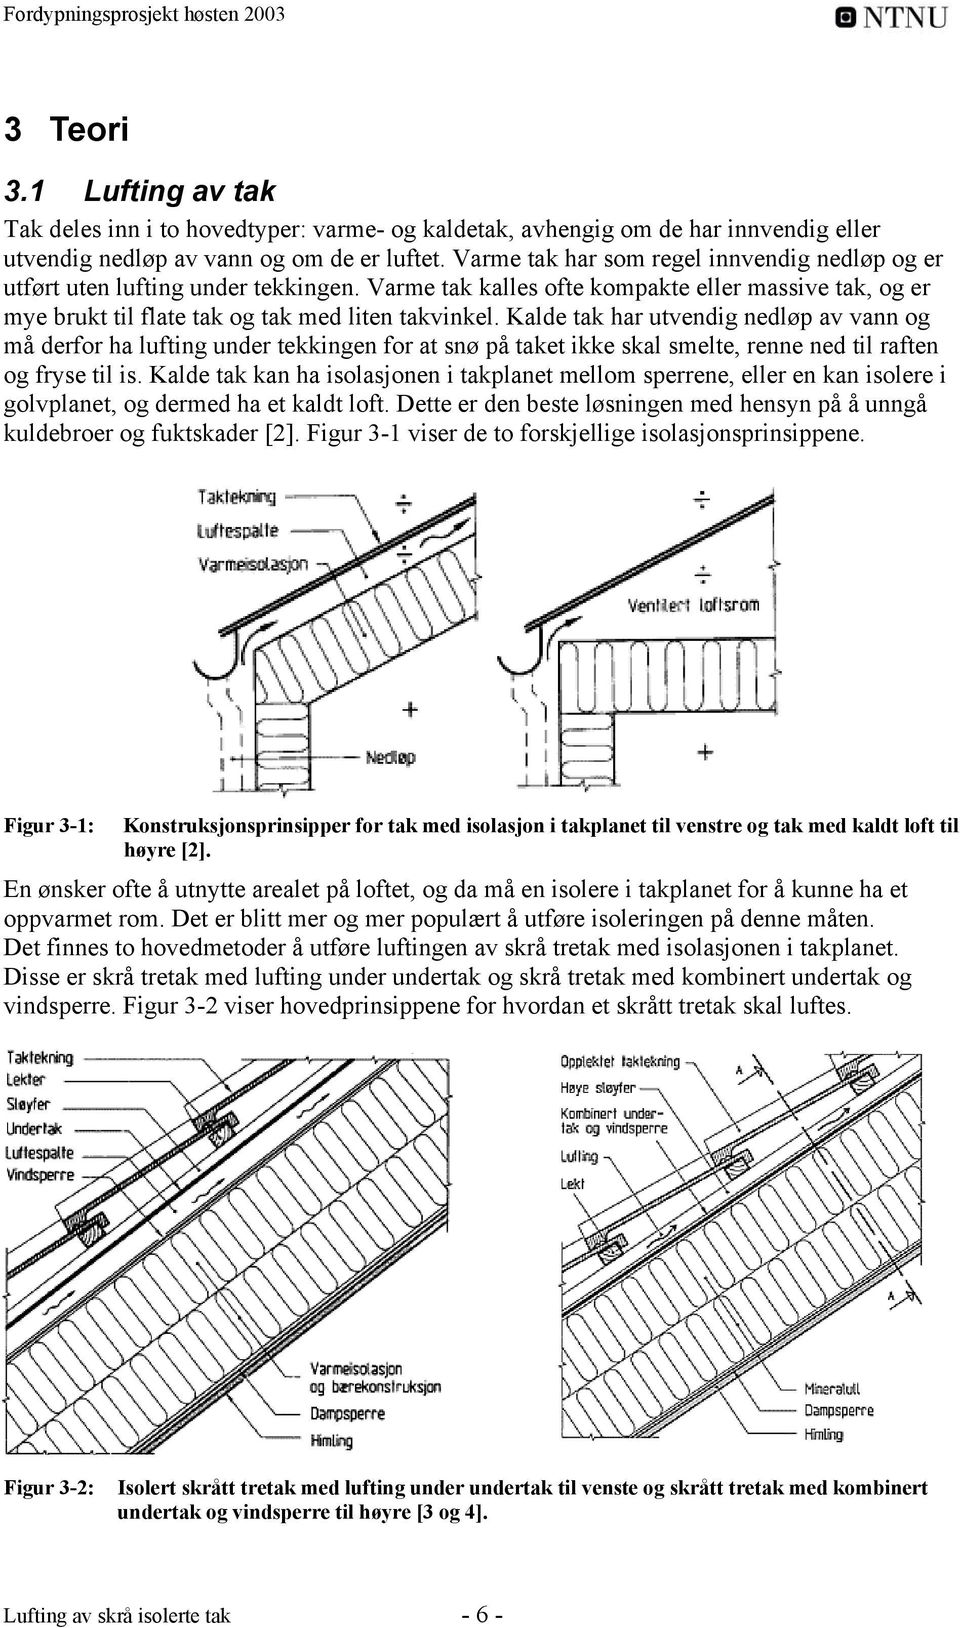 Lufting av skrå isolerte tak - PDF Gratis nedlasting